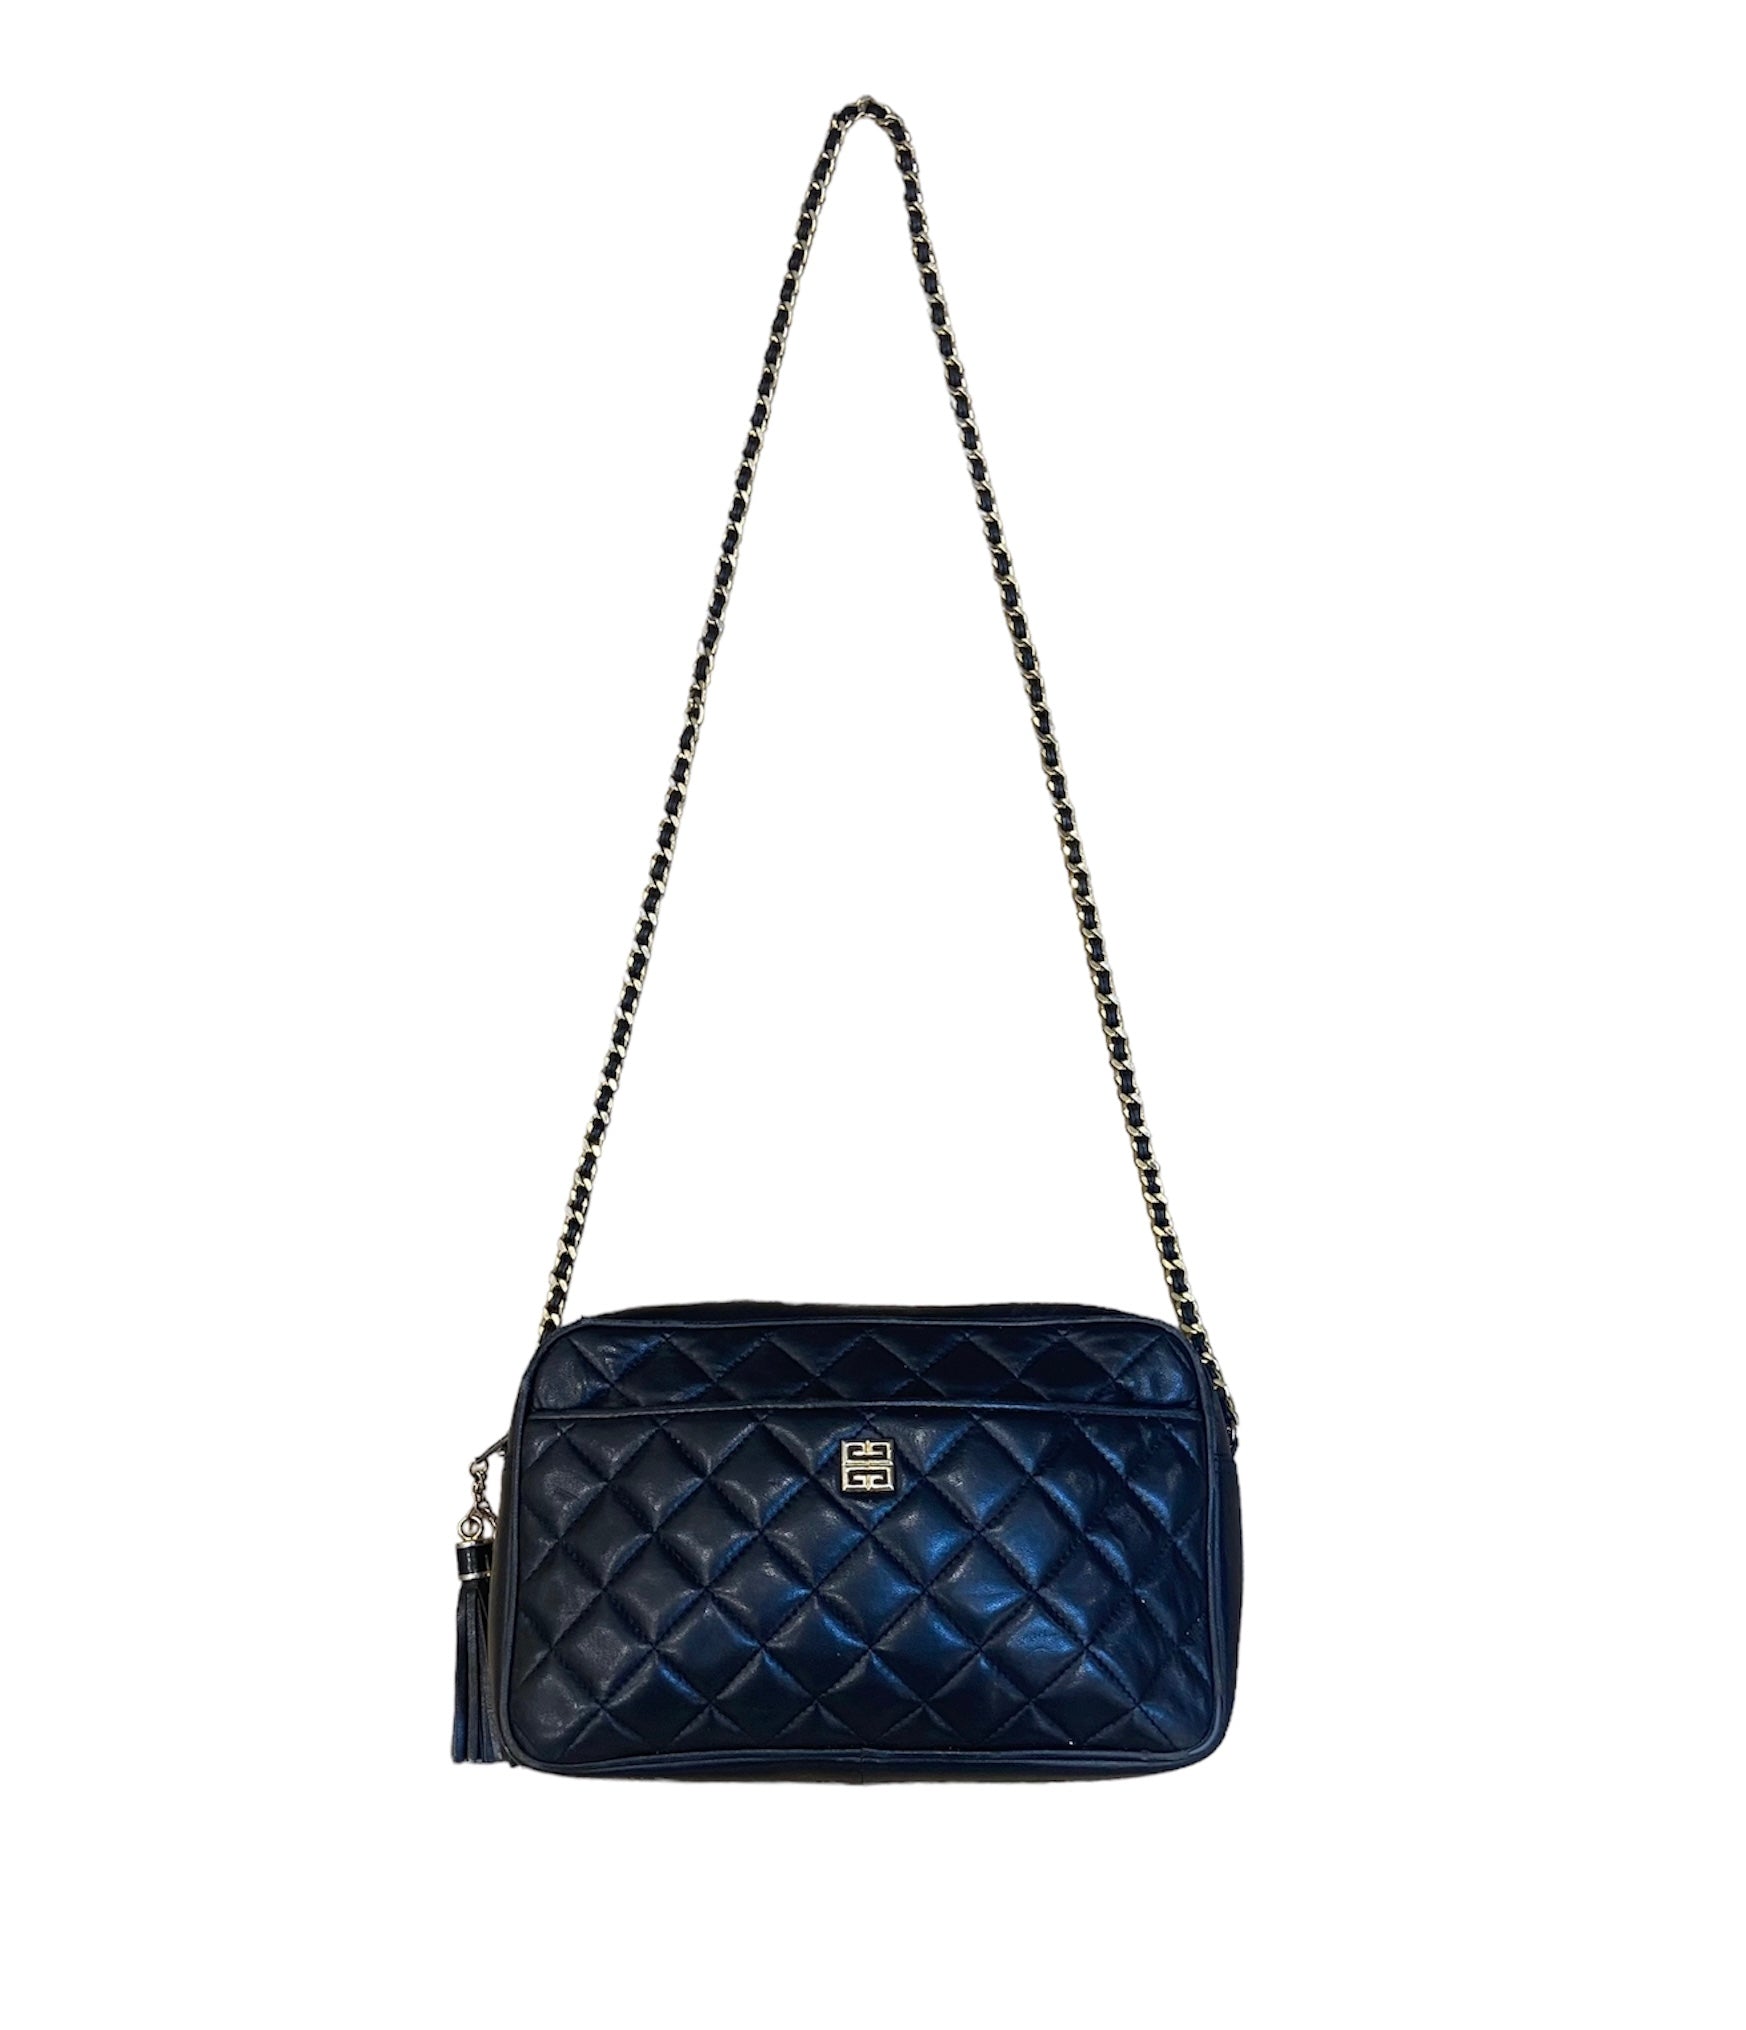 Vintage Givenchy Bag - Indigo Blue Style